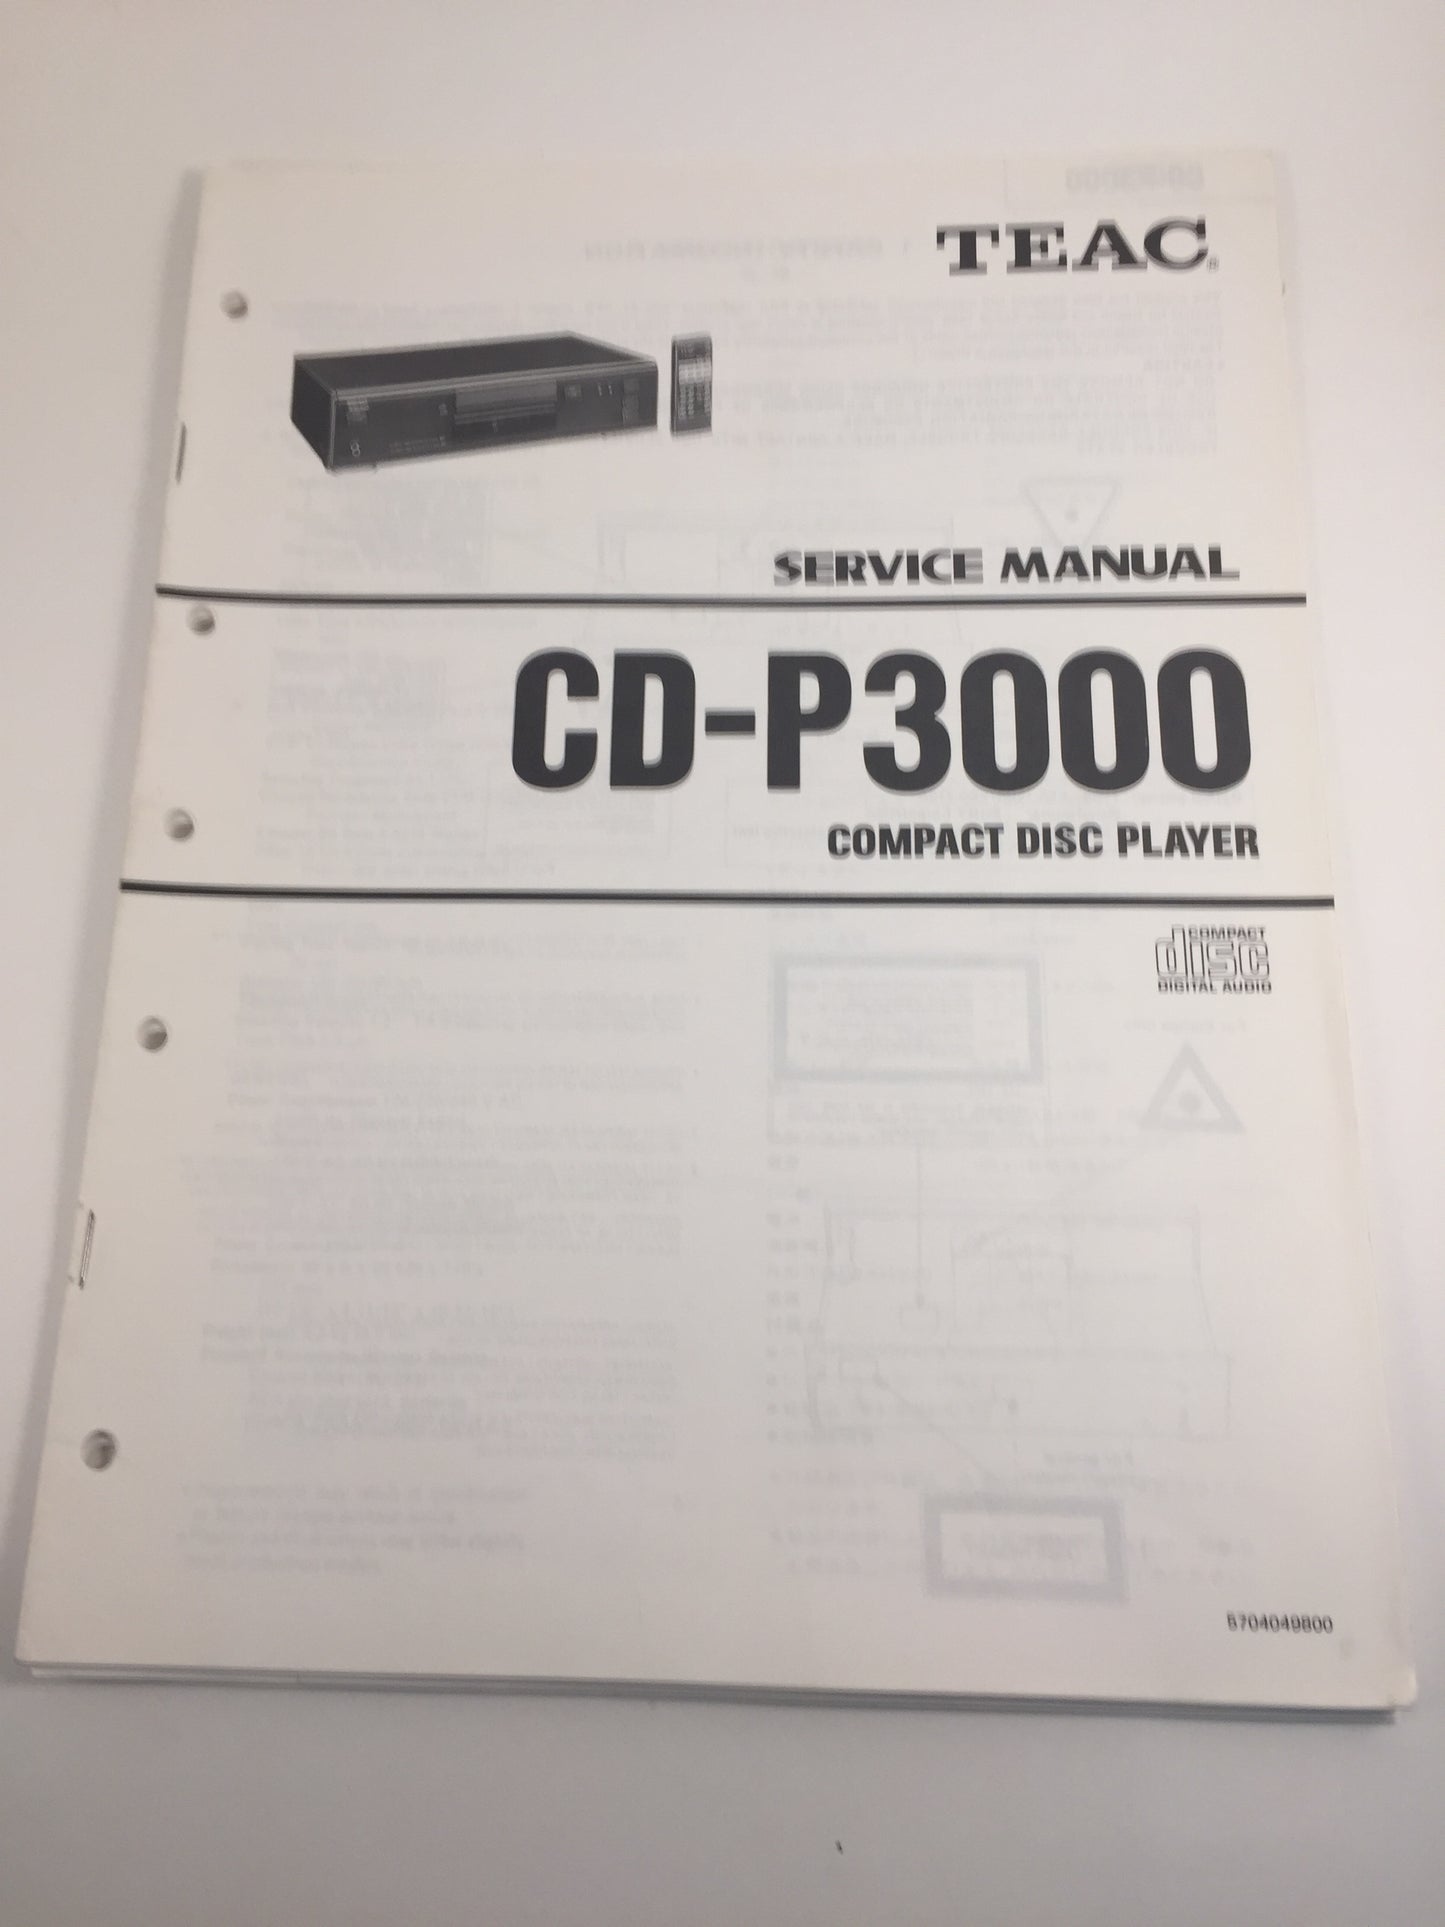 TEAC CD-P3000 Compact disc player service manual